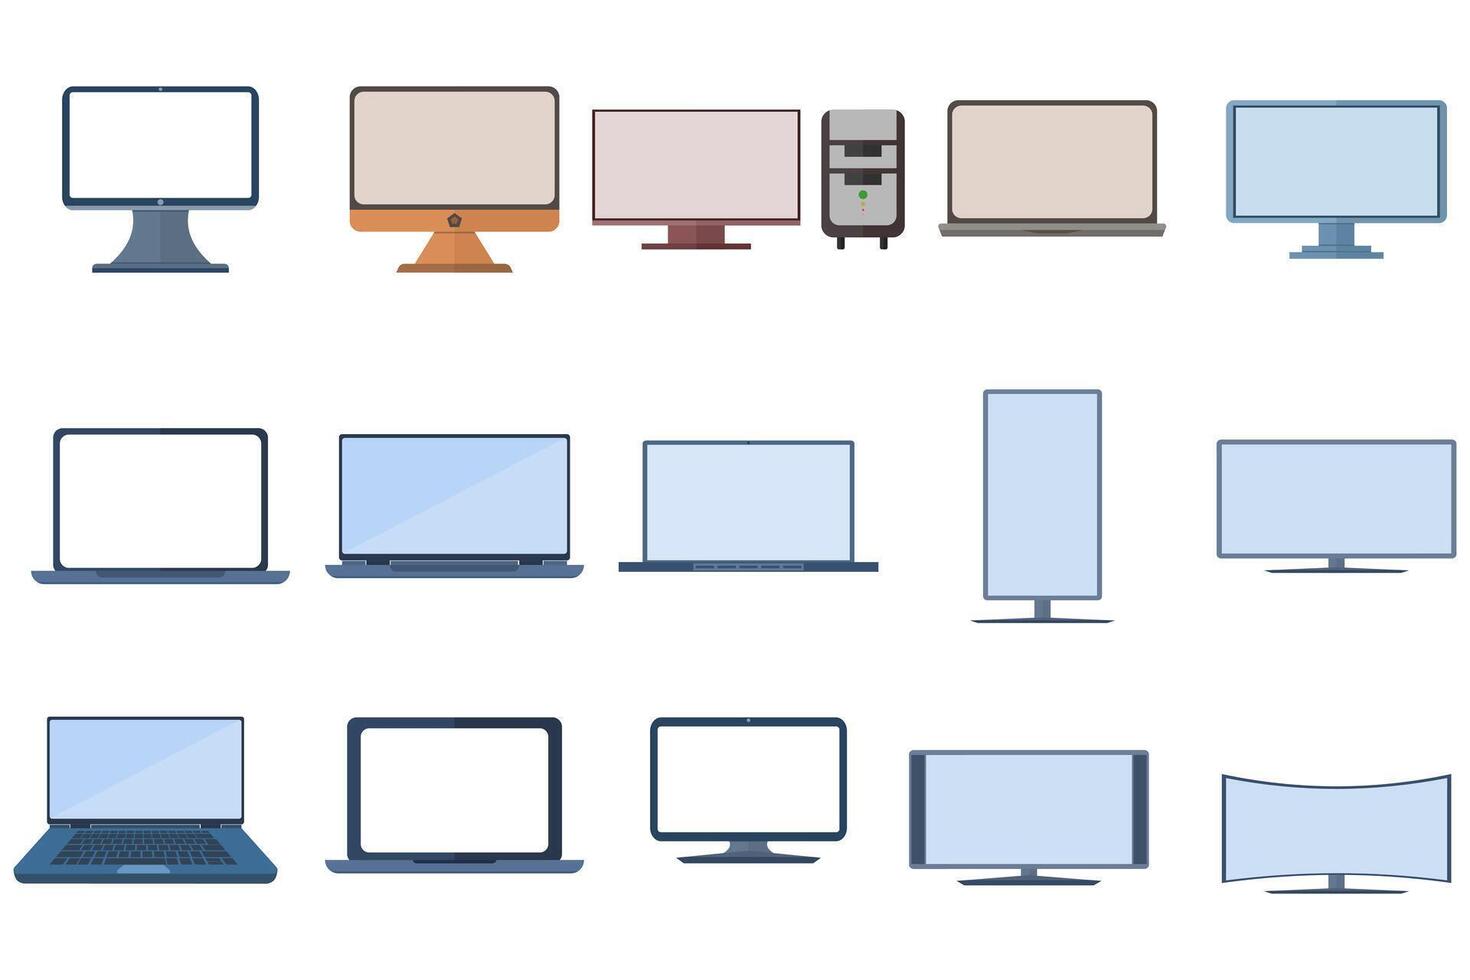 samling av elektronik och enheter relaterad ikoner. dator och bärbar dator ikoner. samling av dator, hårdvara, bärbar dator och datorer vektor tecken. platt vektor illustration på vit bakgrund.